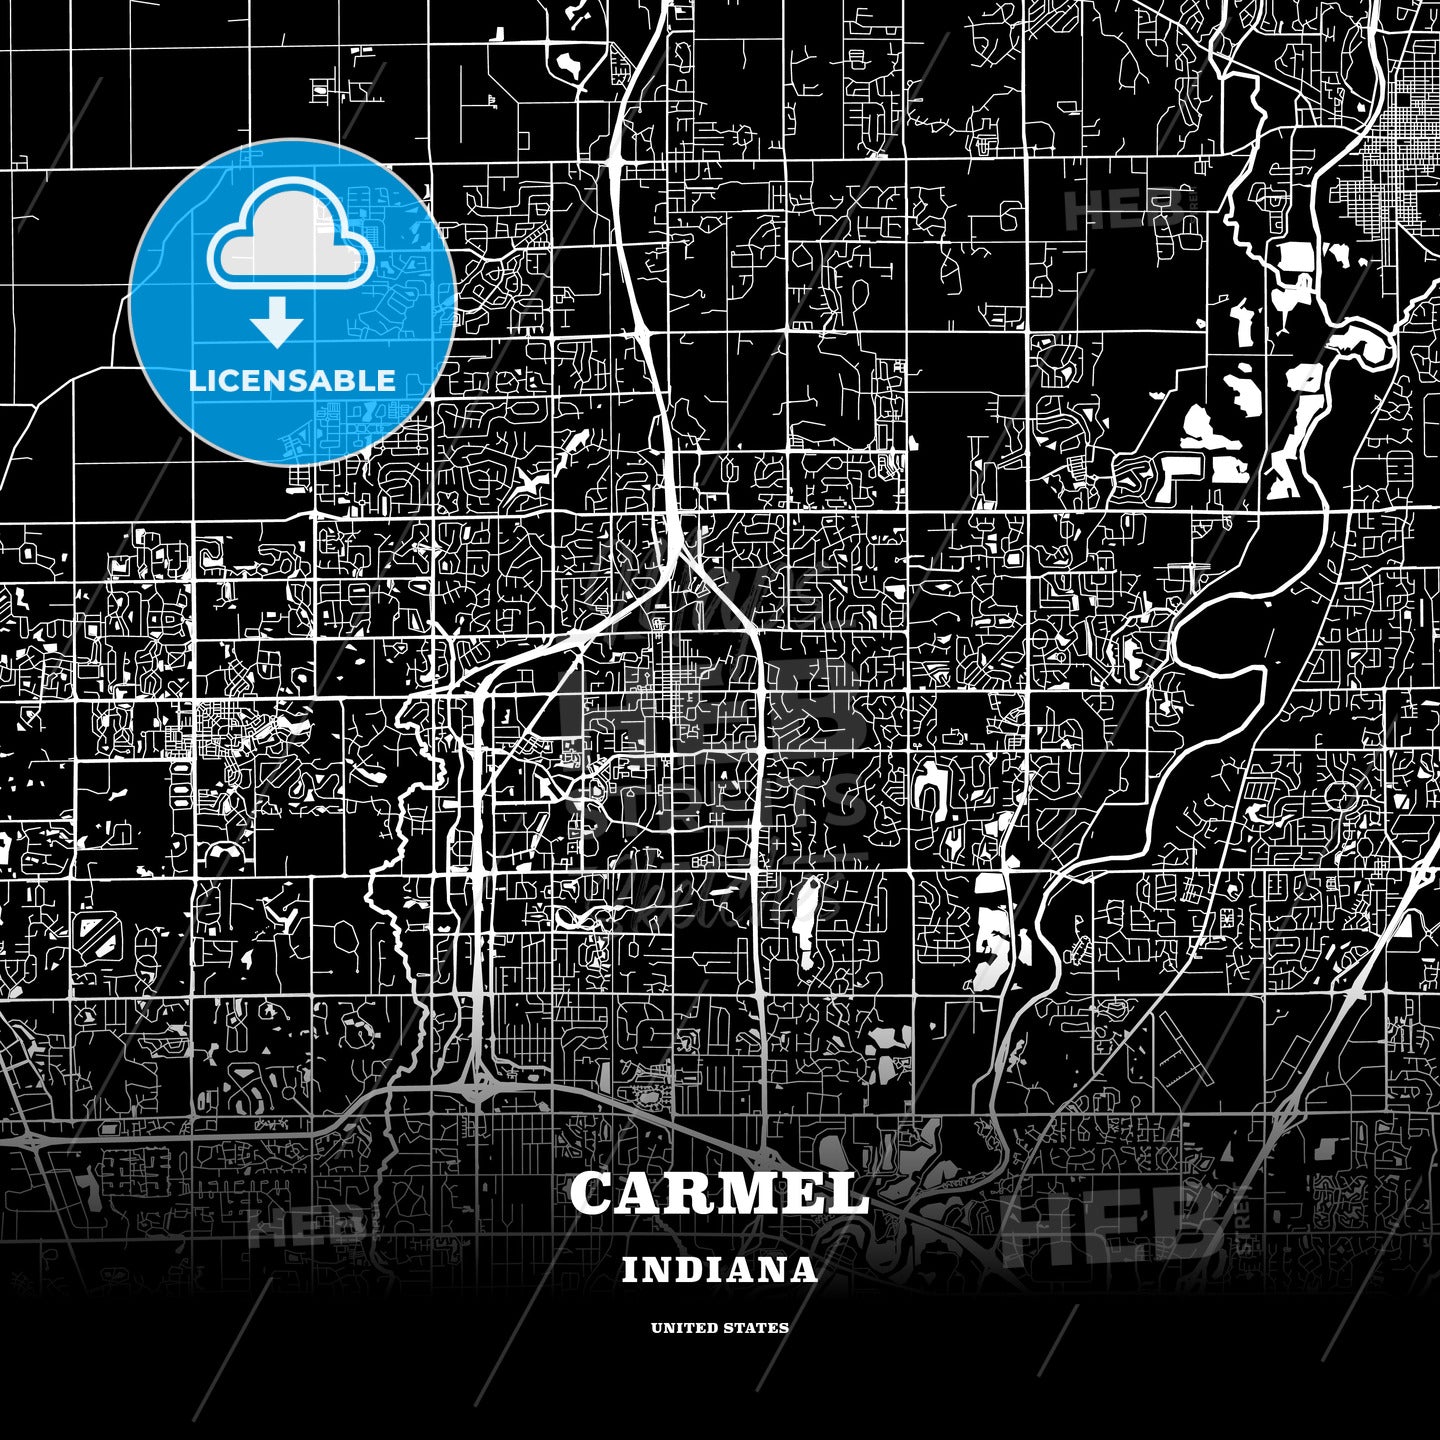 Carmel, Indiana, USA map